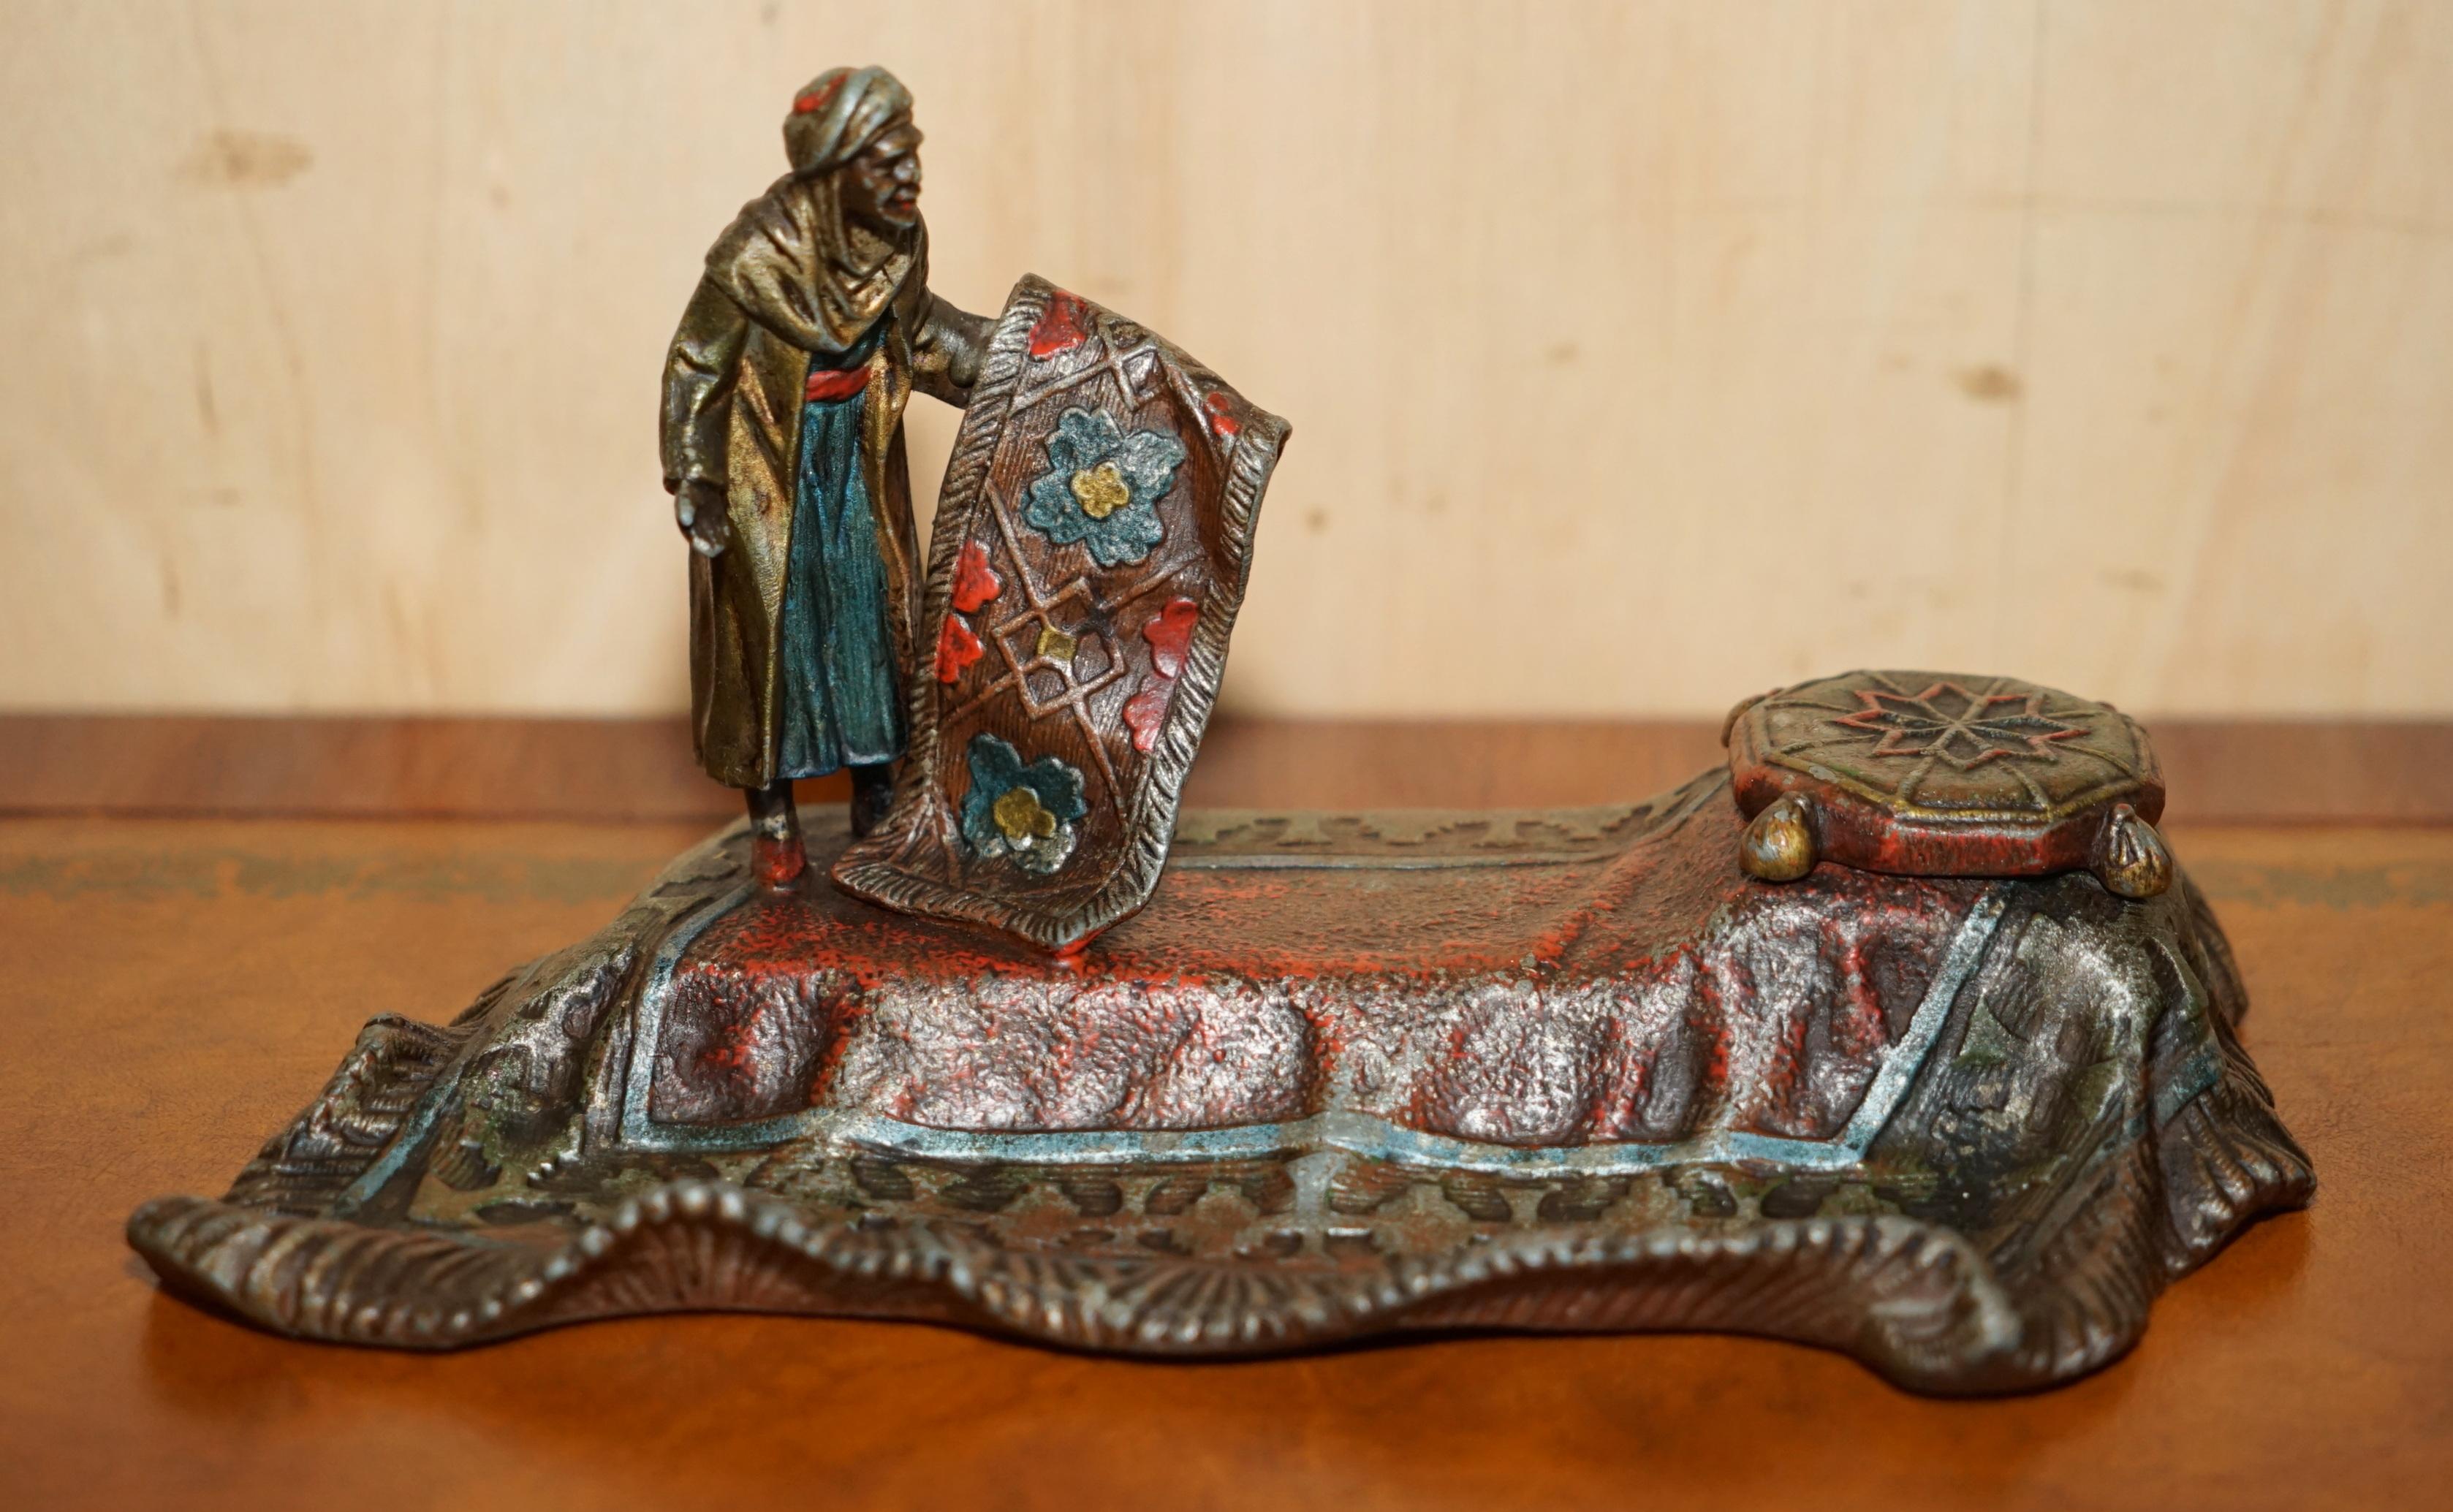 Wir freuen uns, Ihnen dieses schöne, in Österreich gefertigte und gestempelte Tintenfass mit der Darstellung eines arabischen Teppichverkäufers nach einem Originalentwurf von Franz Bergman anbieten zu können.

Dies ist ein sehr dekoratives Stück,